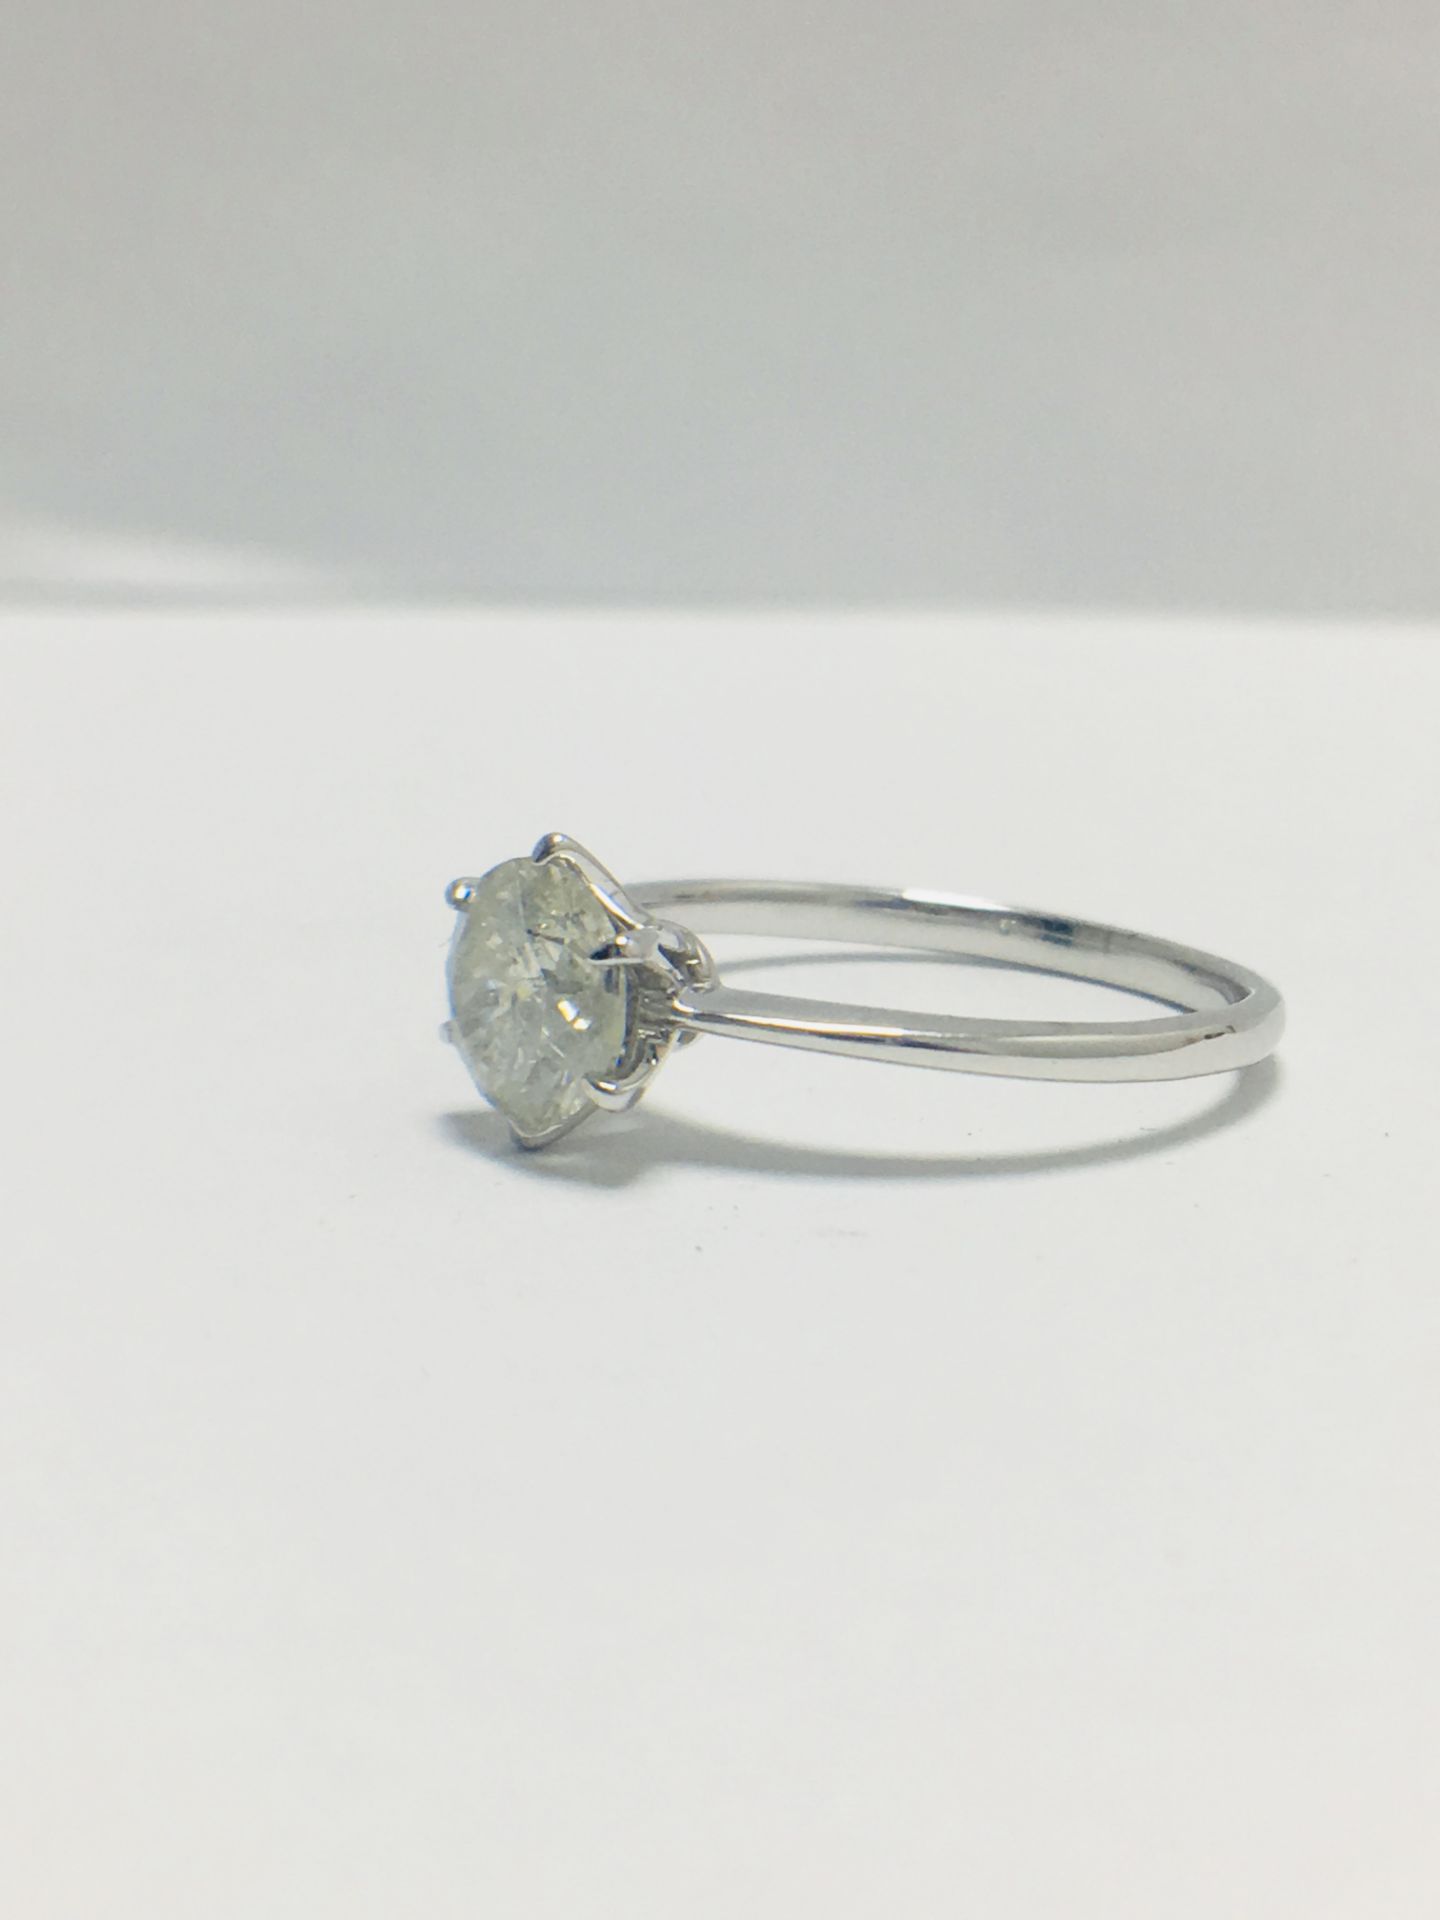 1ct Platinum Diamond Solitaire Ring - Image 2 of 10